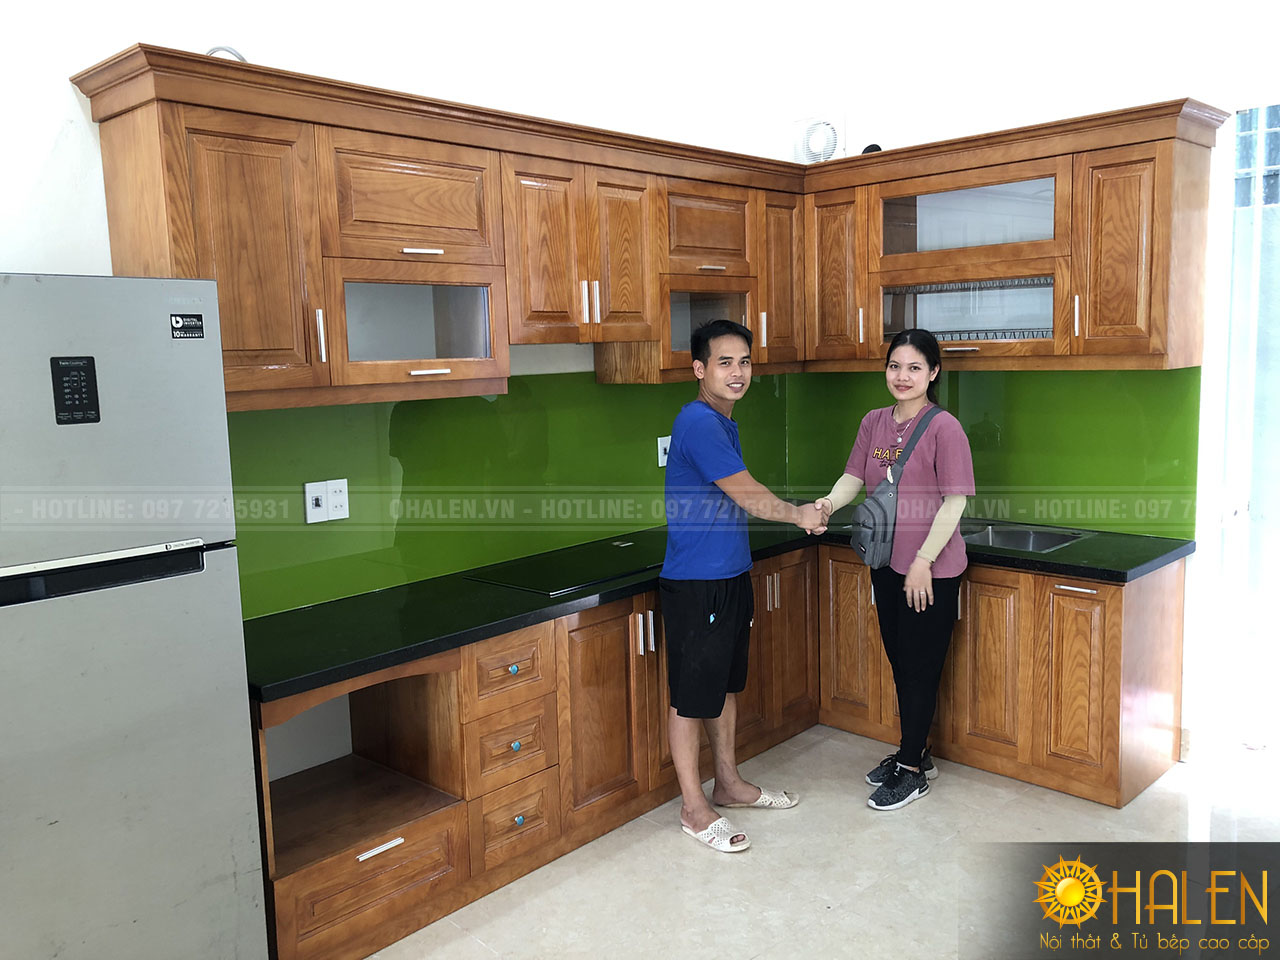 Hình ảnh khách hàng hài lòng với sản phẩm tủ bếp rẻ và đẹp của nội thất OHALEN